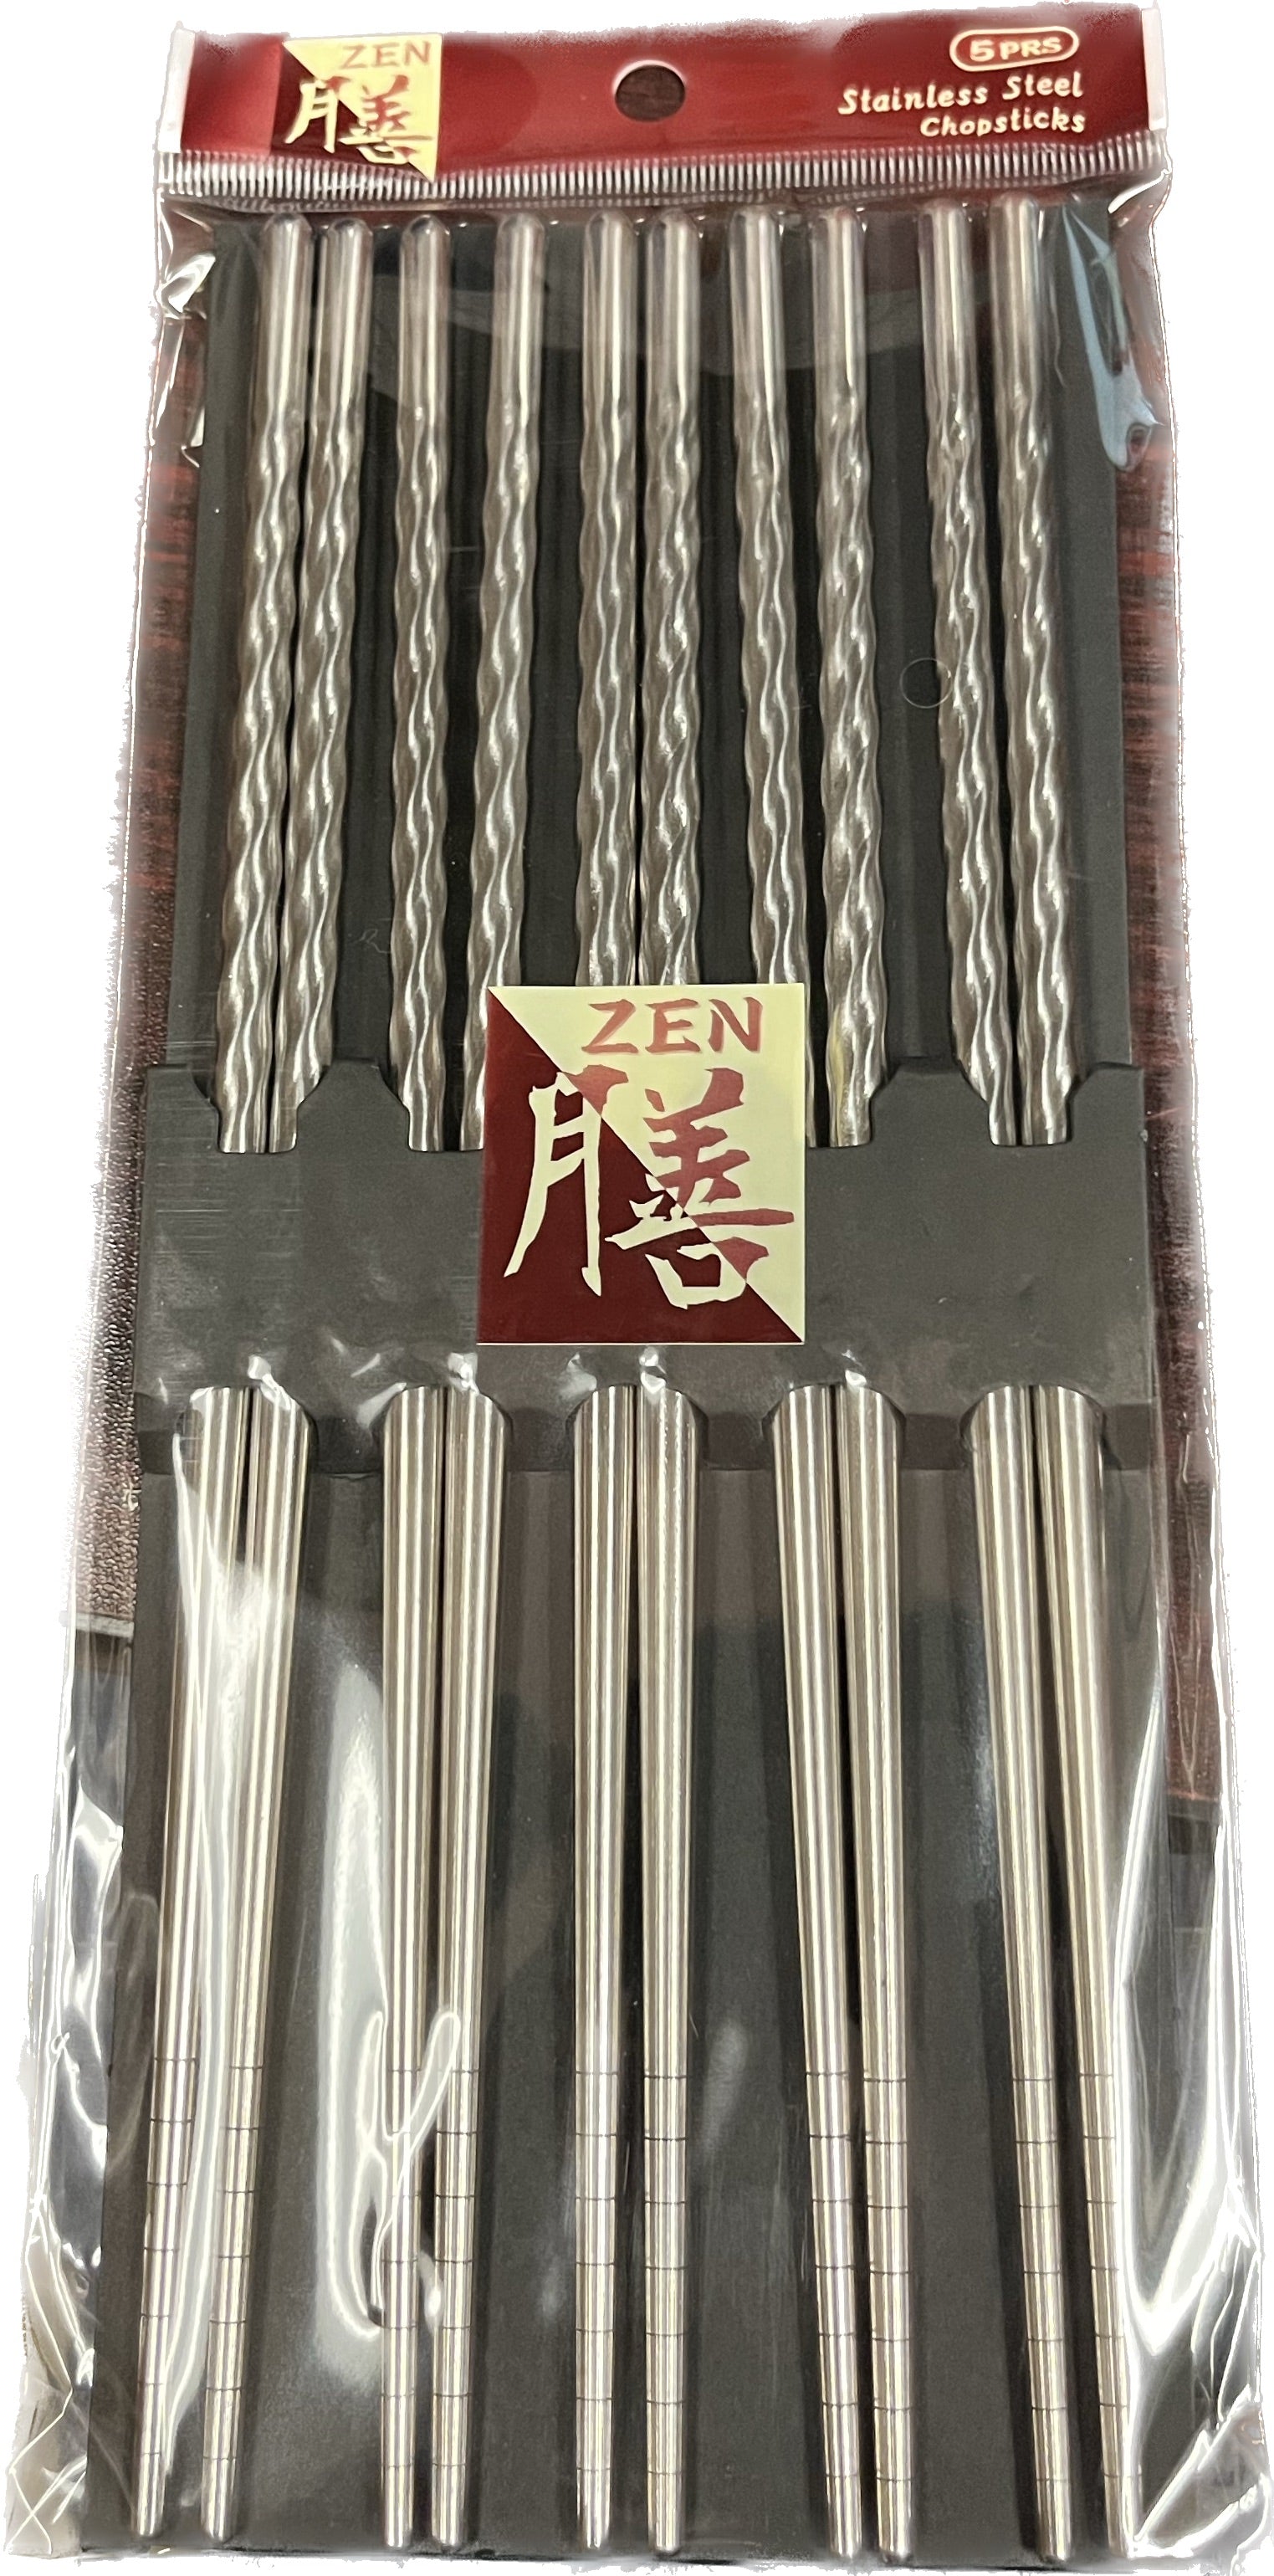 Palillos de acero inoxidable Zen - 5 pares